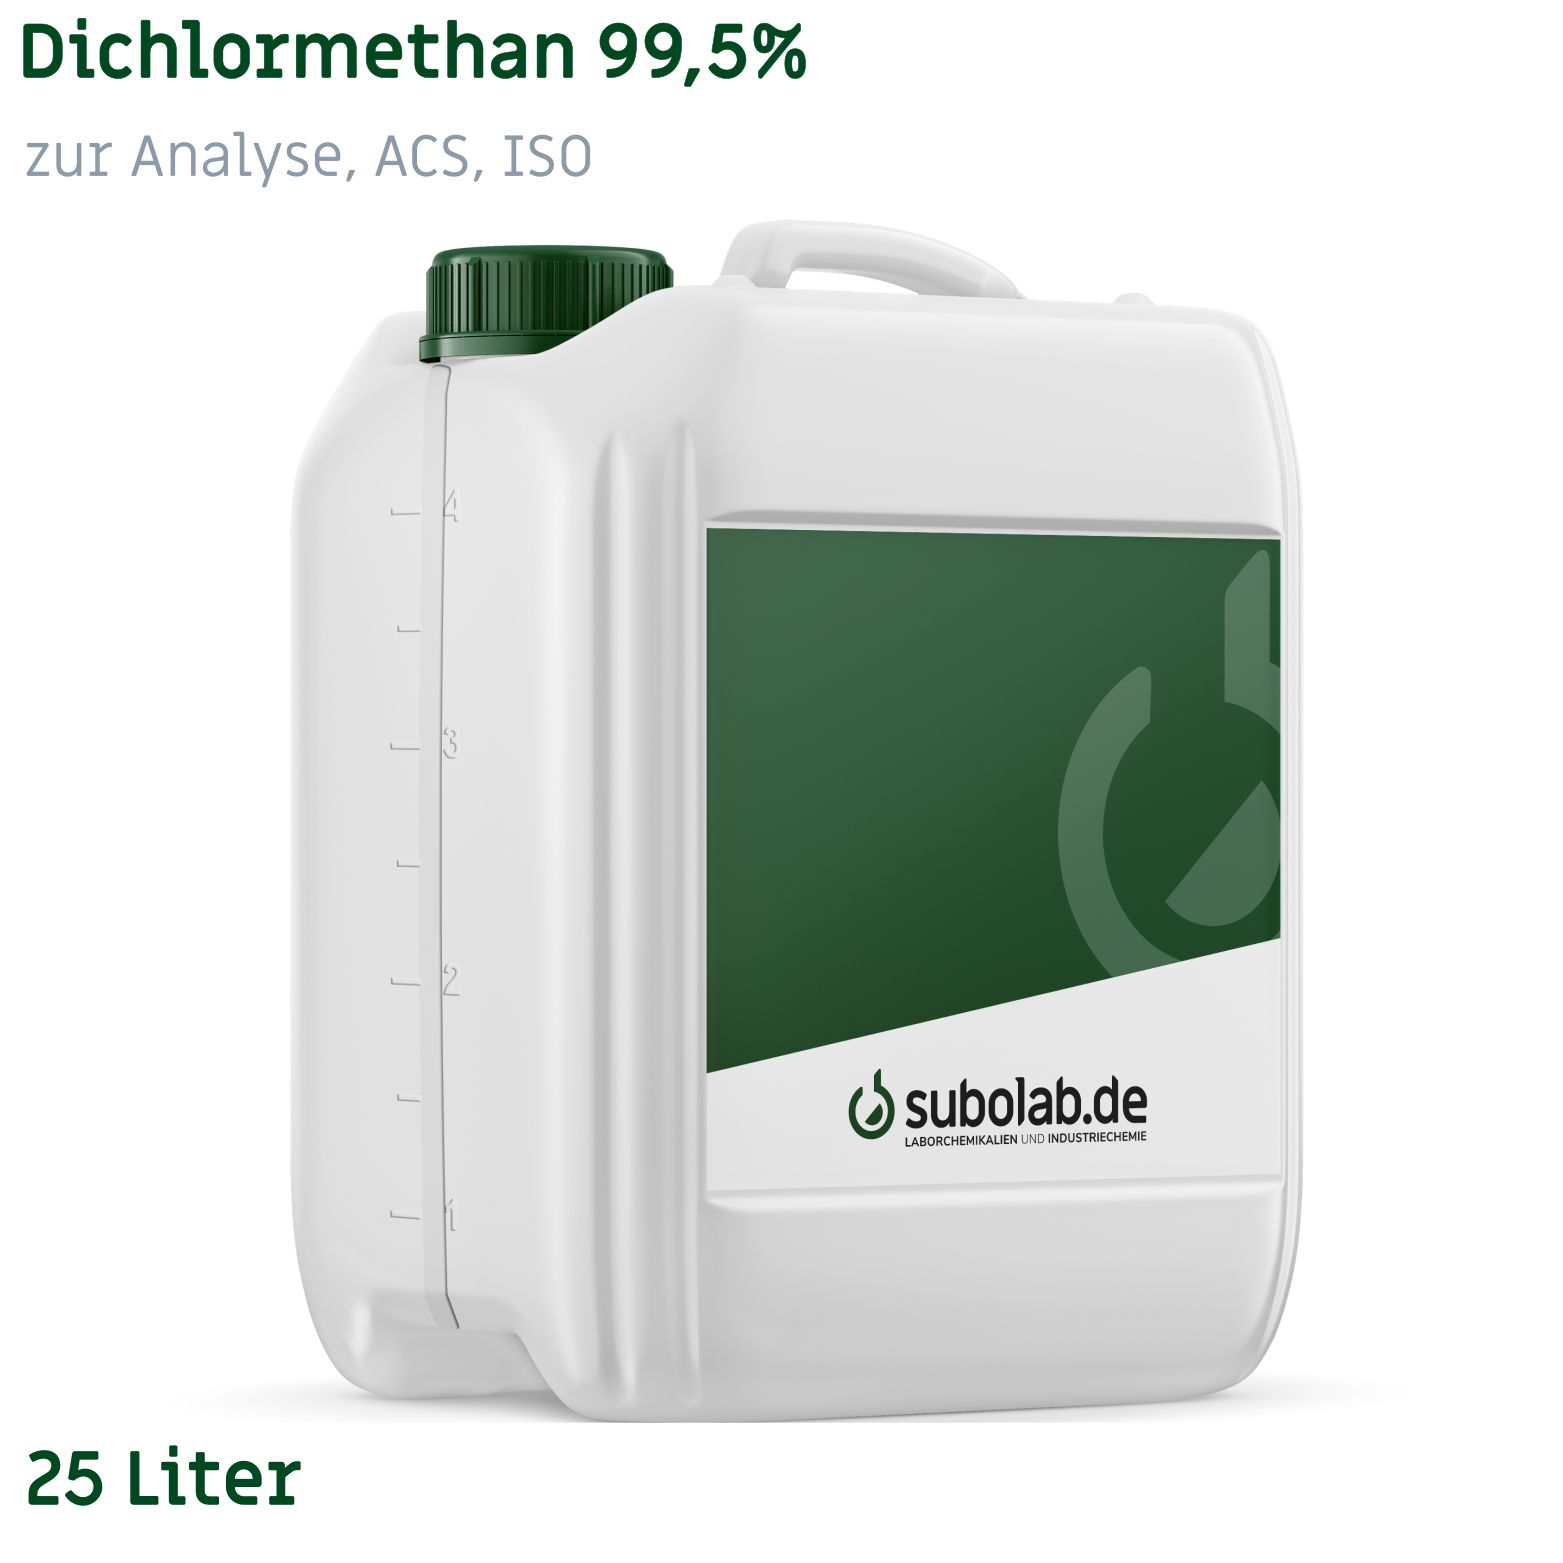 Bild von Dichlormethan 99,5% zur Analyse, ACS, ISO (25 Liter)